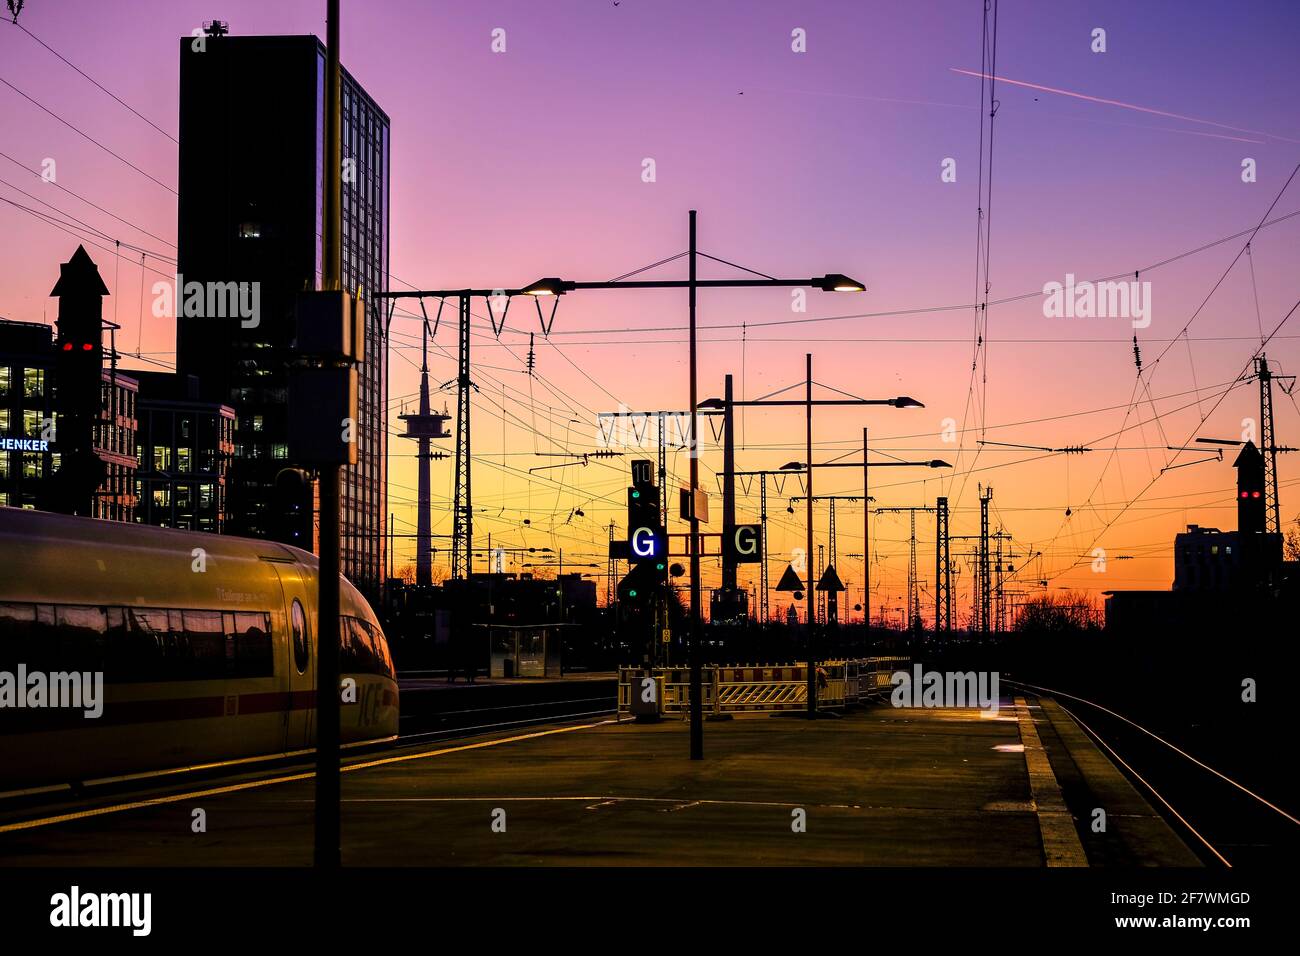 04.12.2019, Essen, Nordrhein-Westfalen, Deutschland - Blick nach Westen in den Abendhimmel von einem Bahnsteig des Essener Hauptbahnhofs Stock Photo